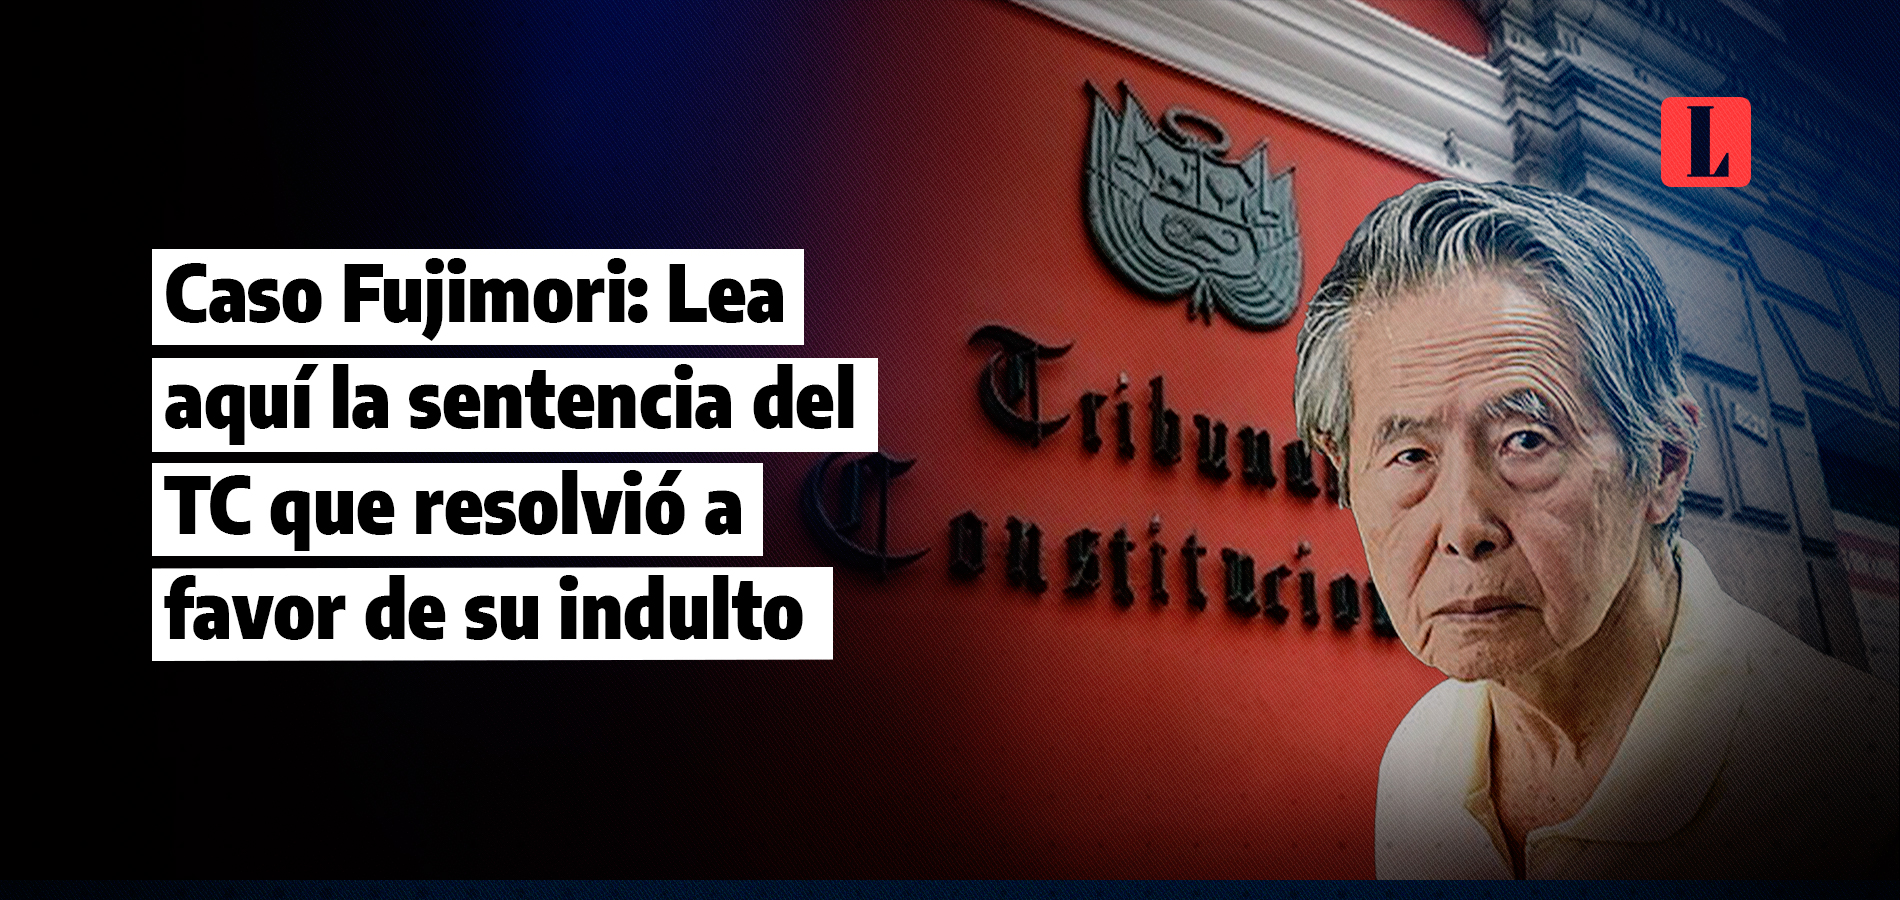 Caso Fujimori: Lea aquí la sentencia del TC que resolvió a favor de su indulto